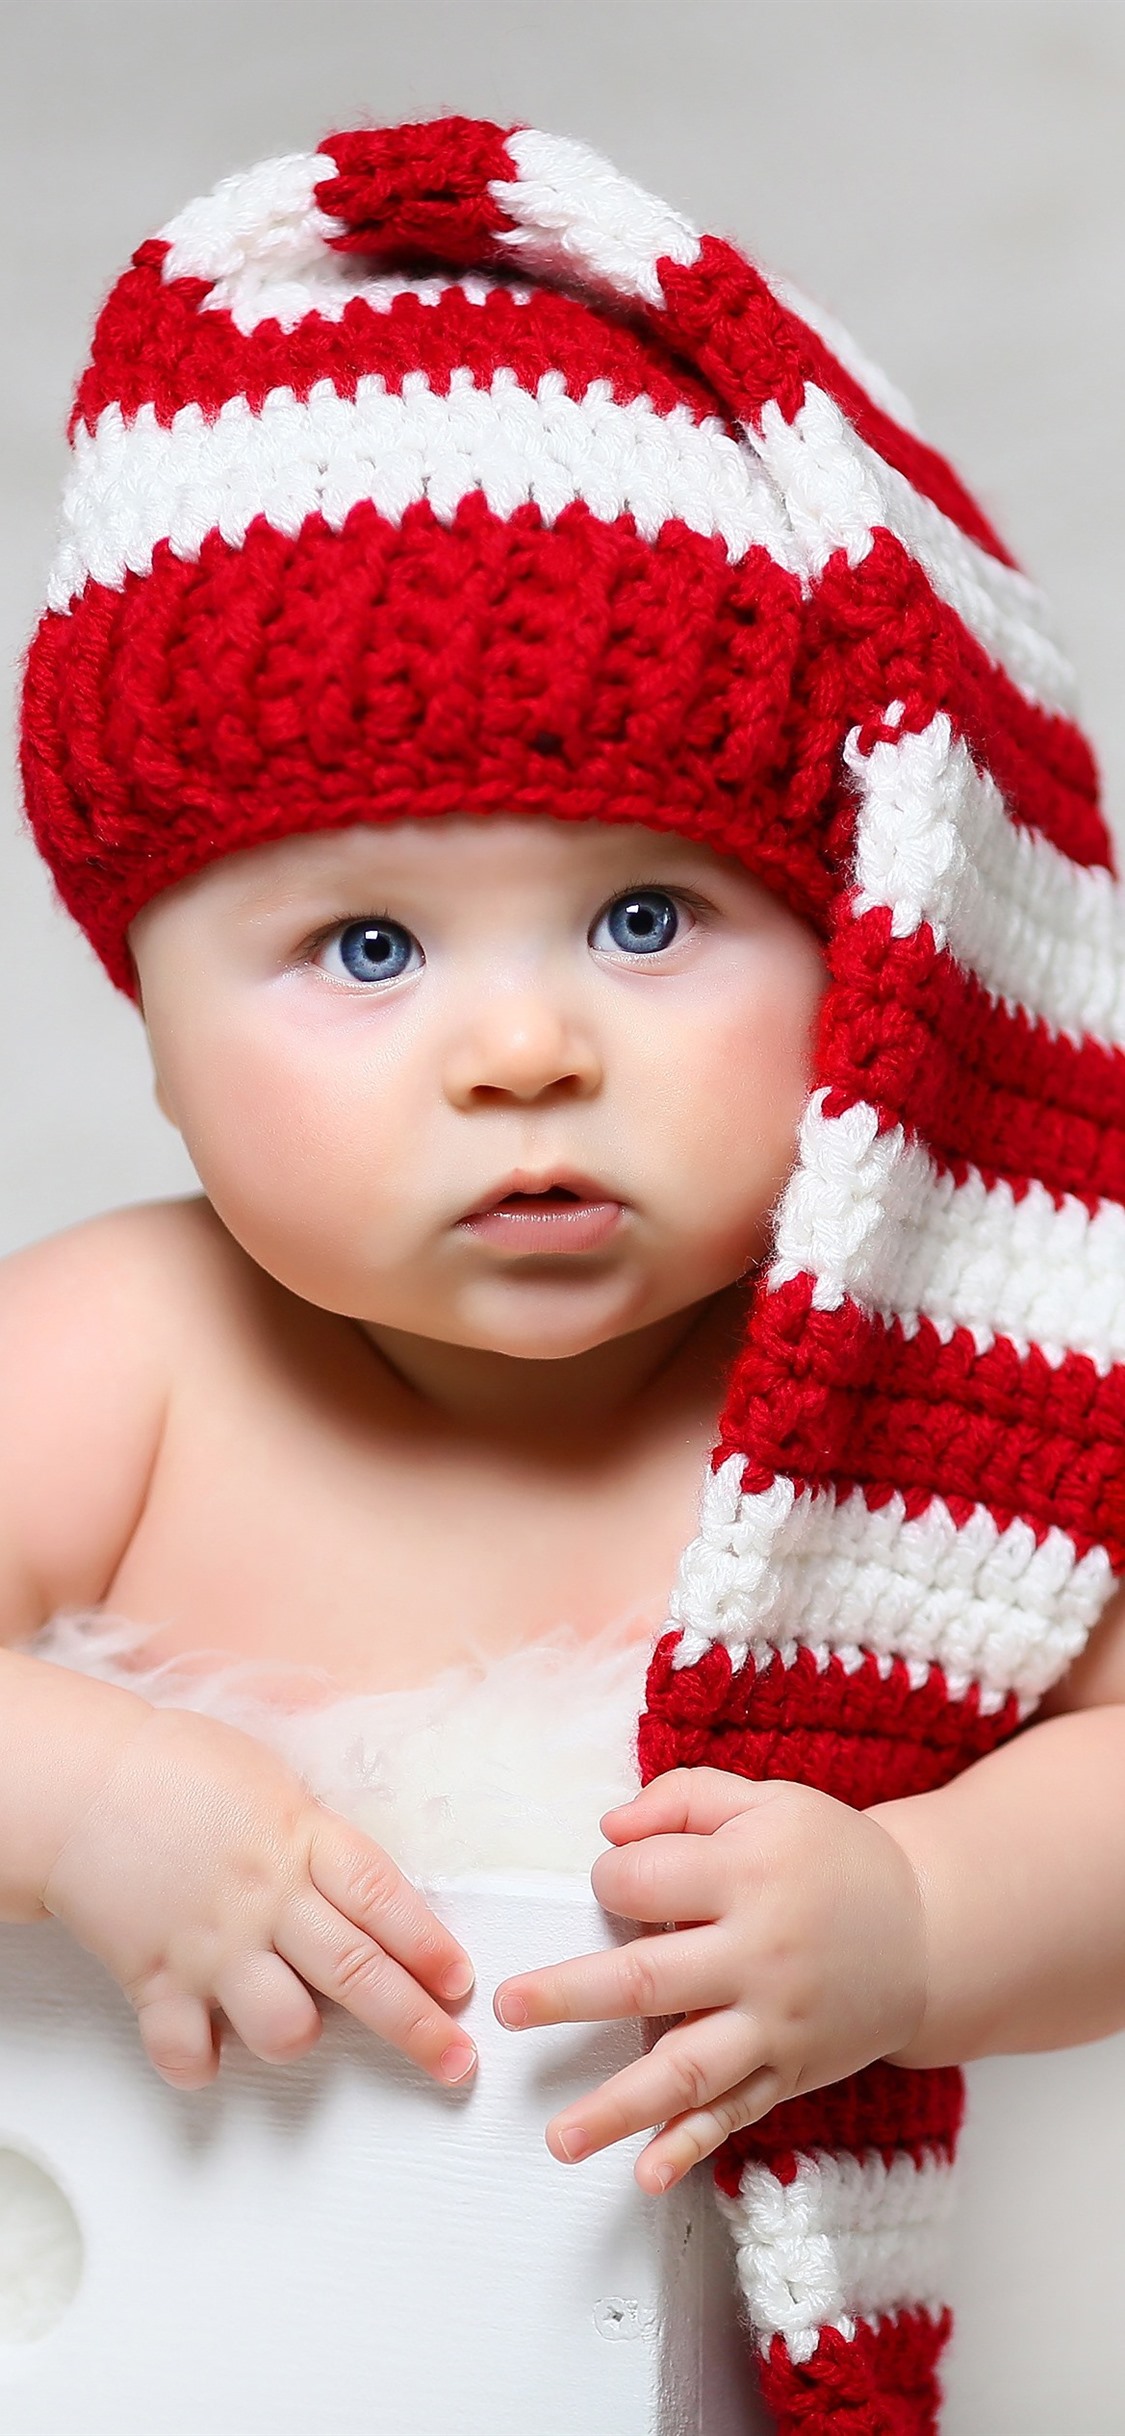 fond d'écran mignon bébé,enfant,bonnet en tricot,vêtements,bébé,crochet